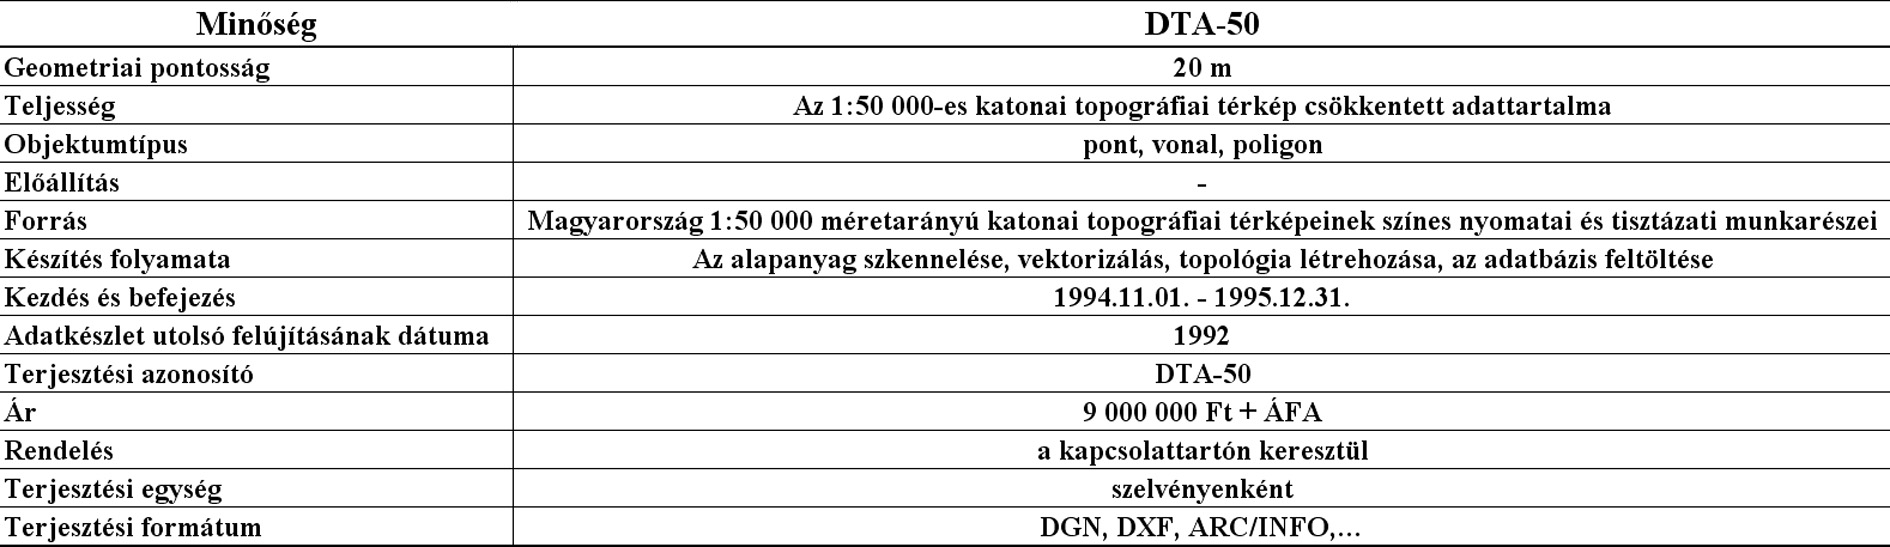 Részlet a DTA-50 digitális térképi adatbázis metaadatából (adatforrás: www.topomap.hu)